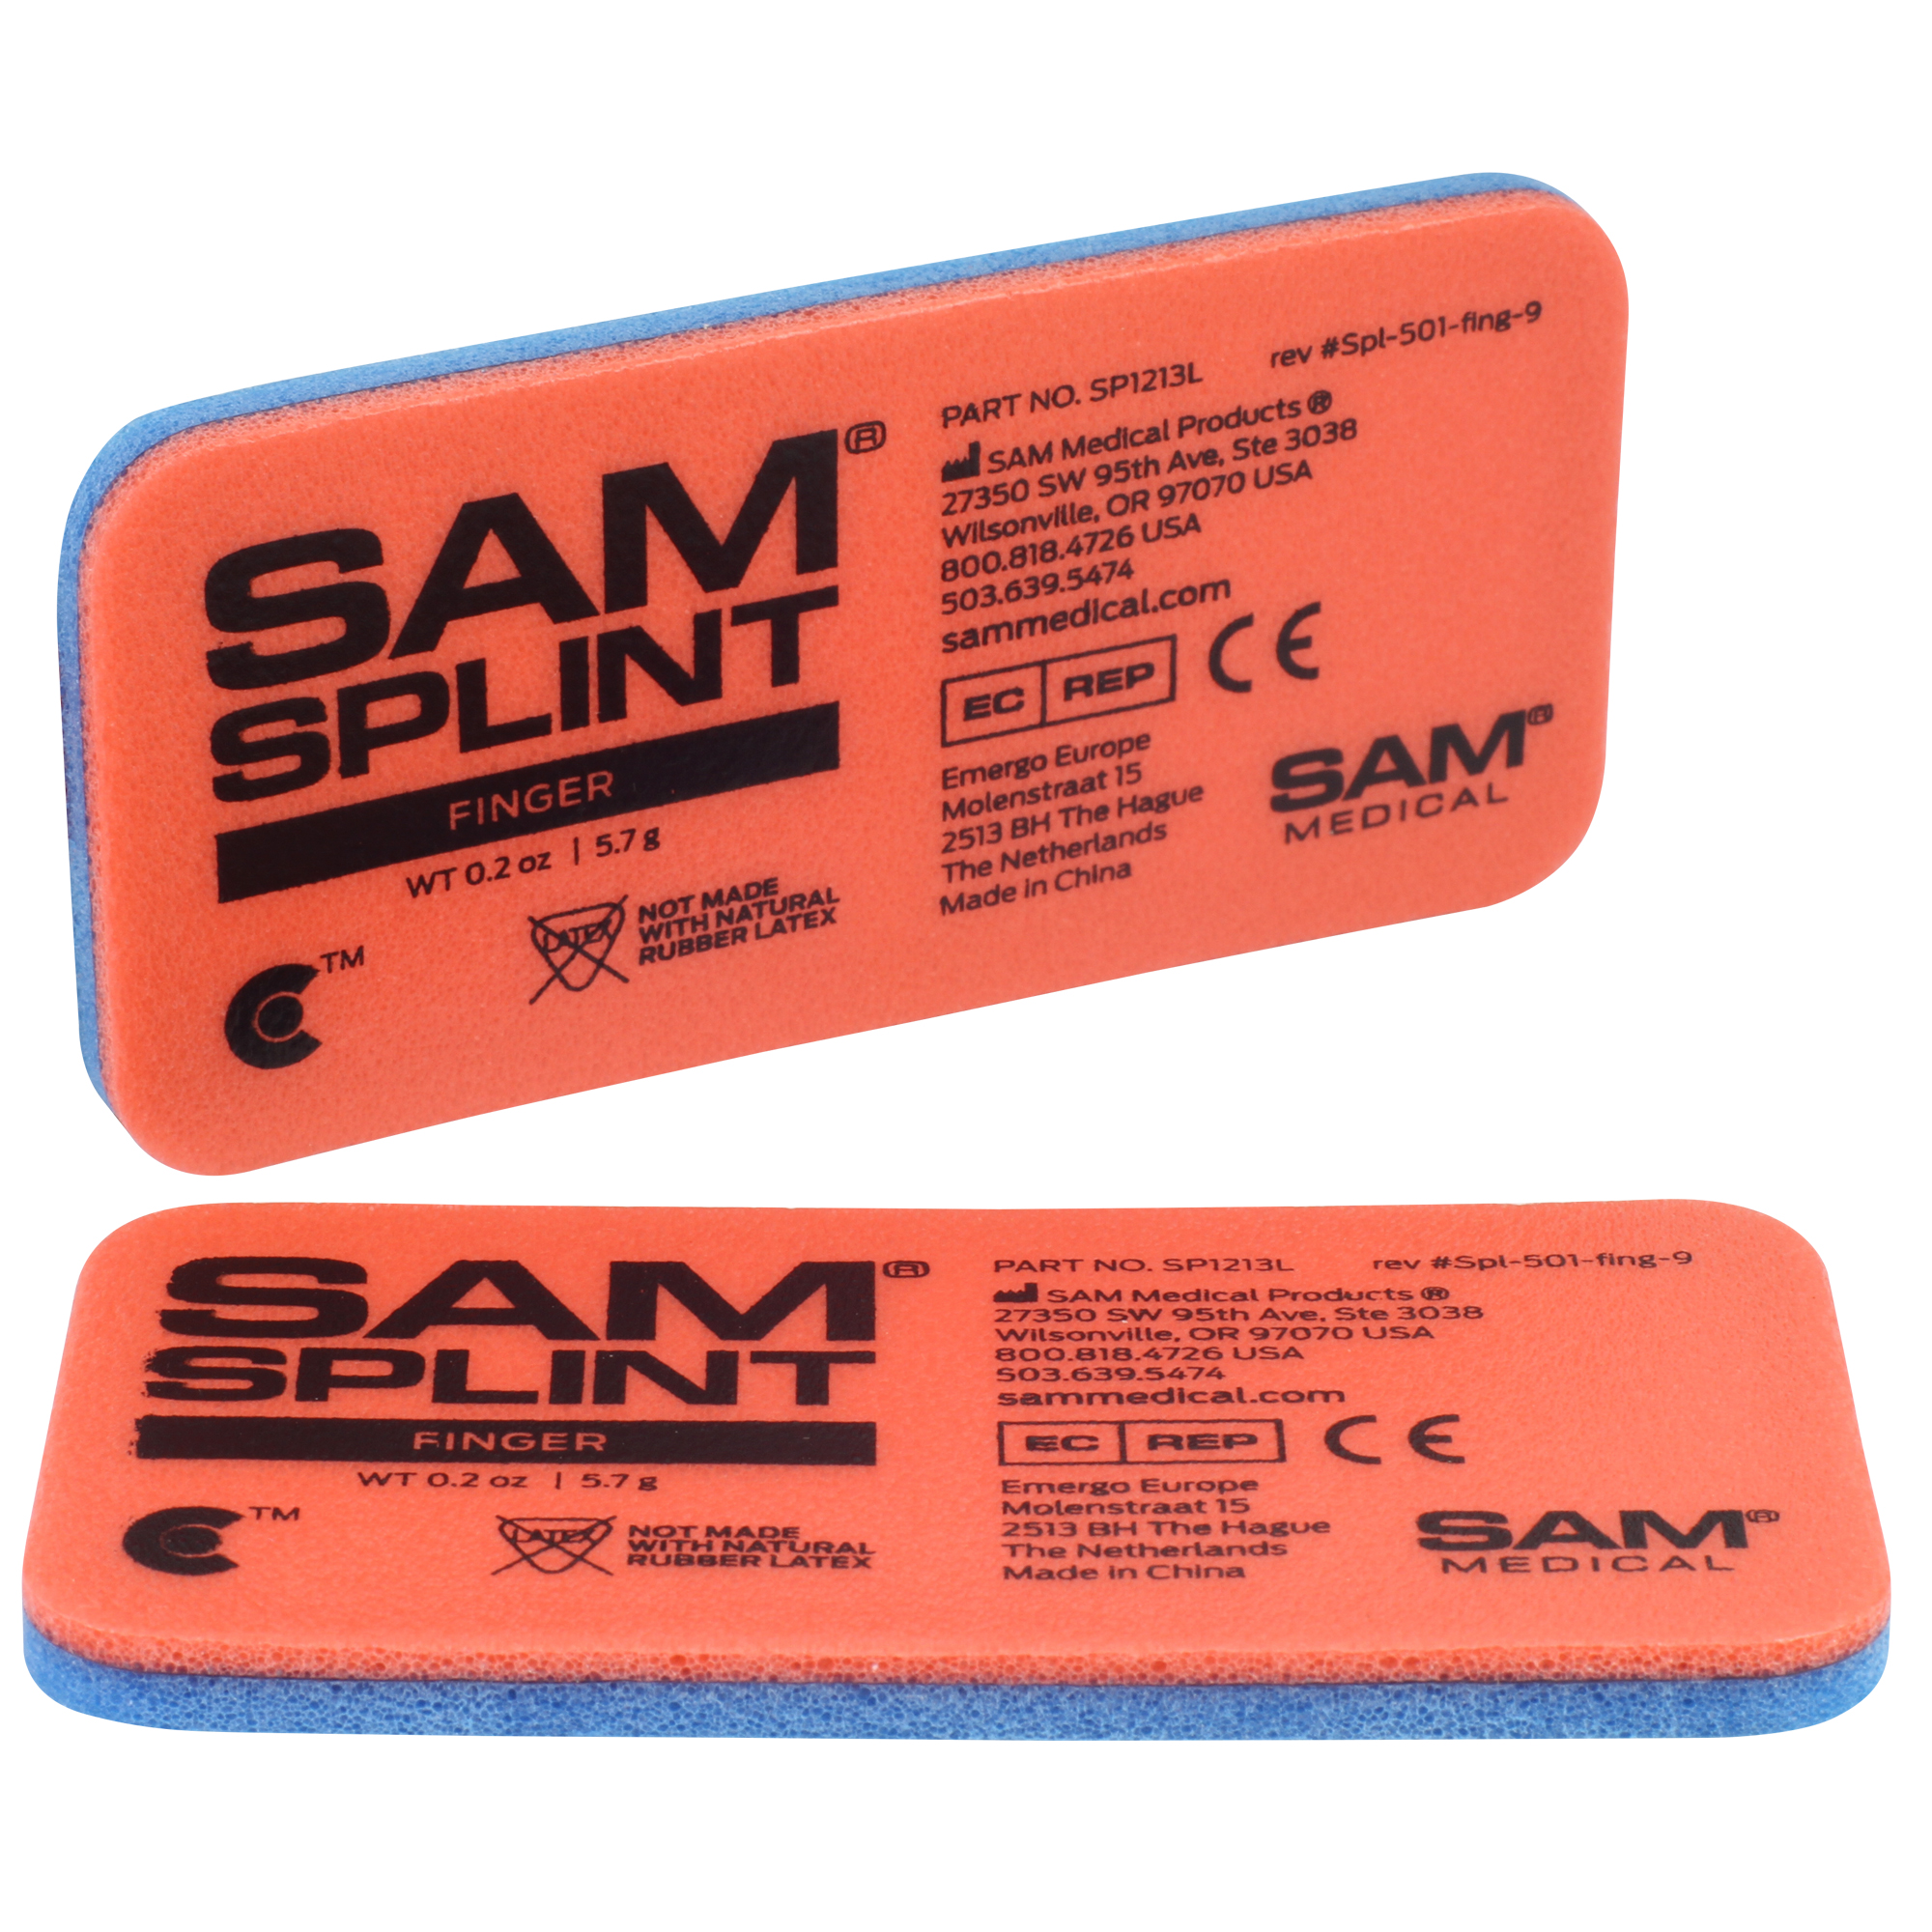 SAM® SPLINT Finger 9 x 4,5 cm